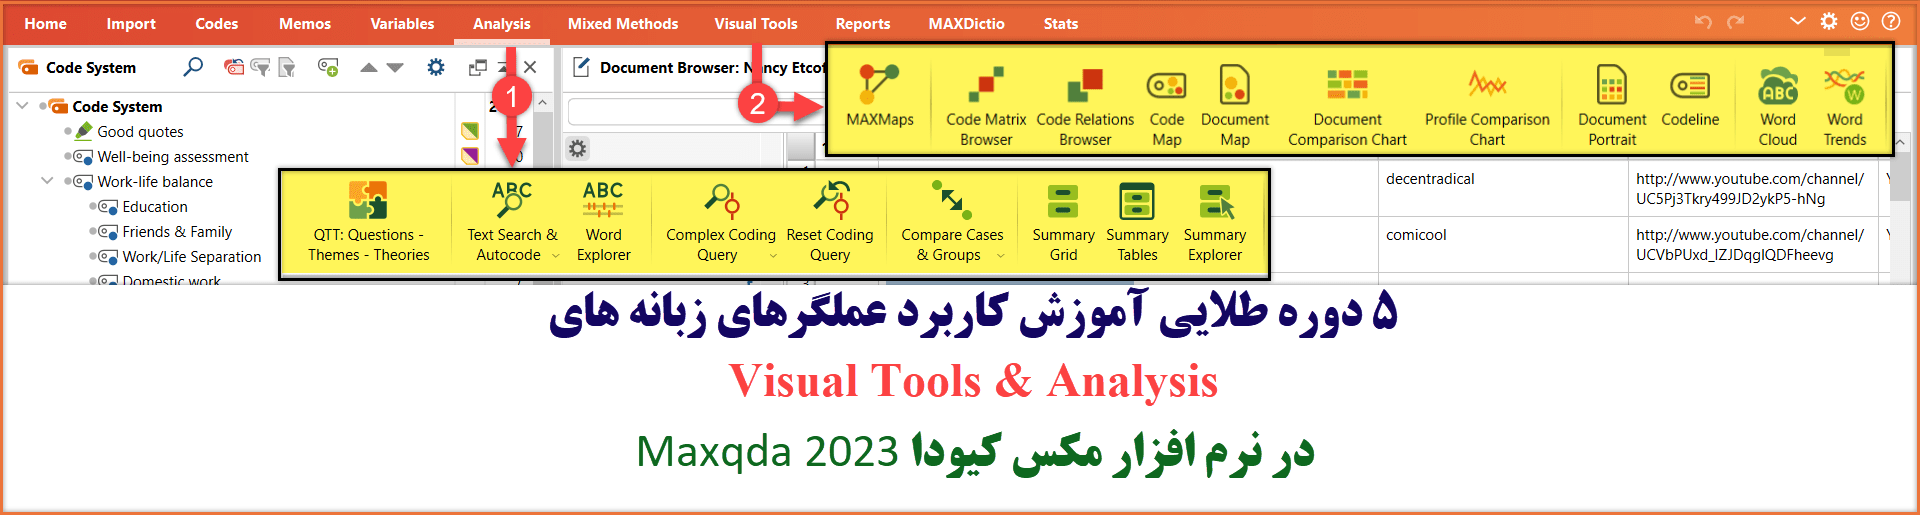 آموزش ابزار visual tools در مکس کیودا ,نمونه فصل چهارم پایان نامه با مکس کیودا ,دانلود جدیدترین نسخه maxqda